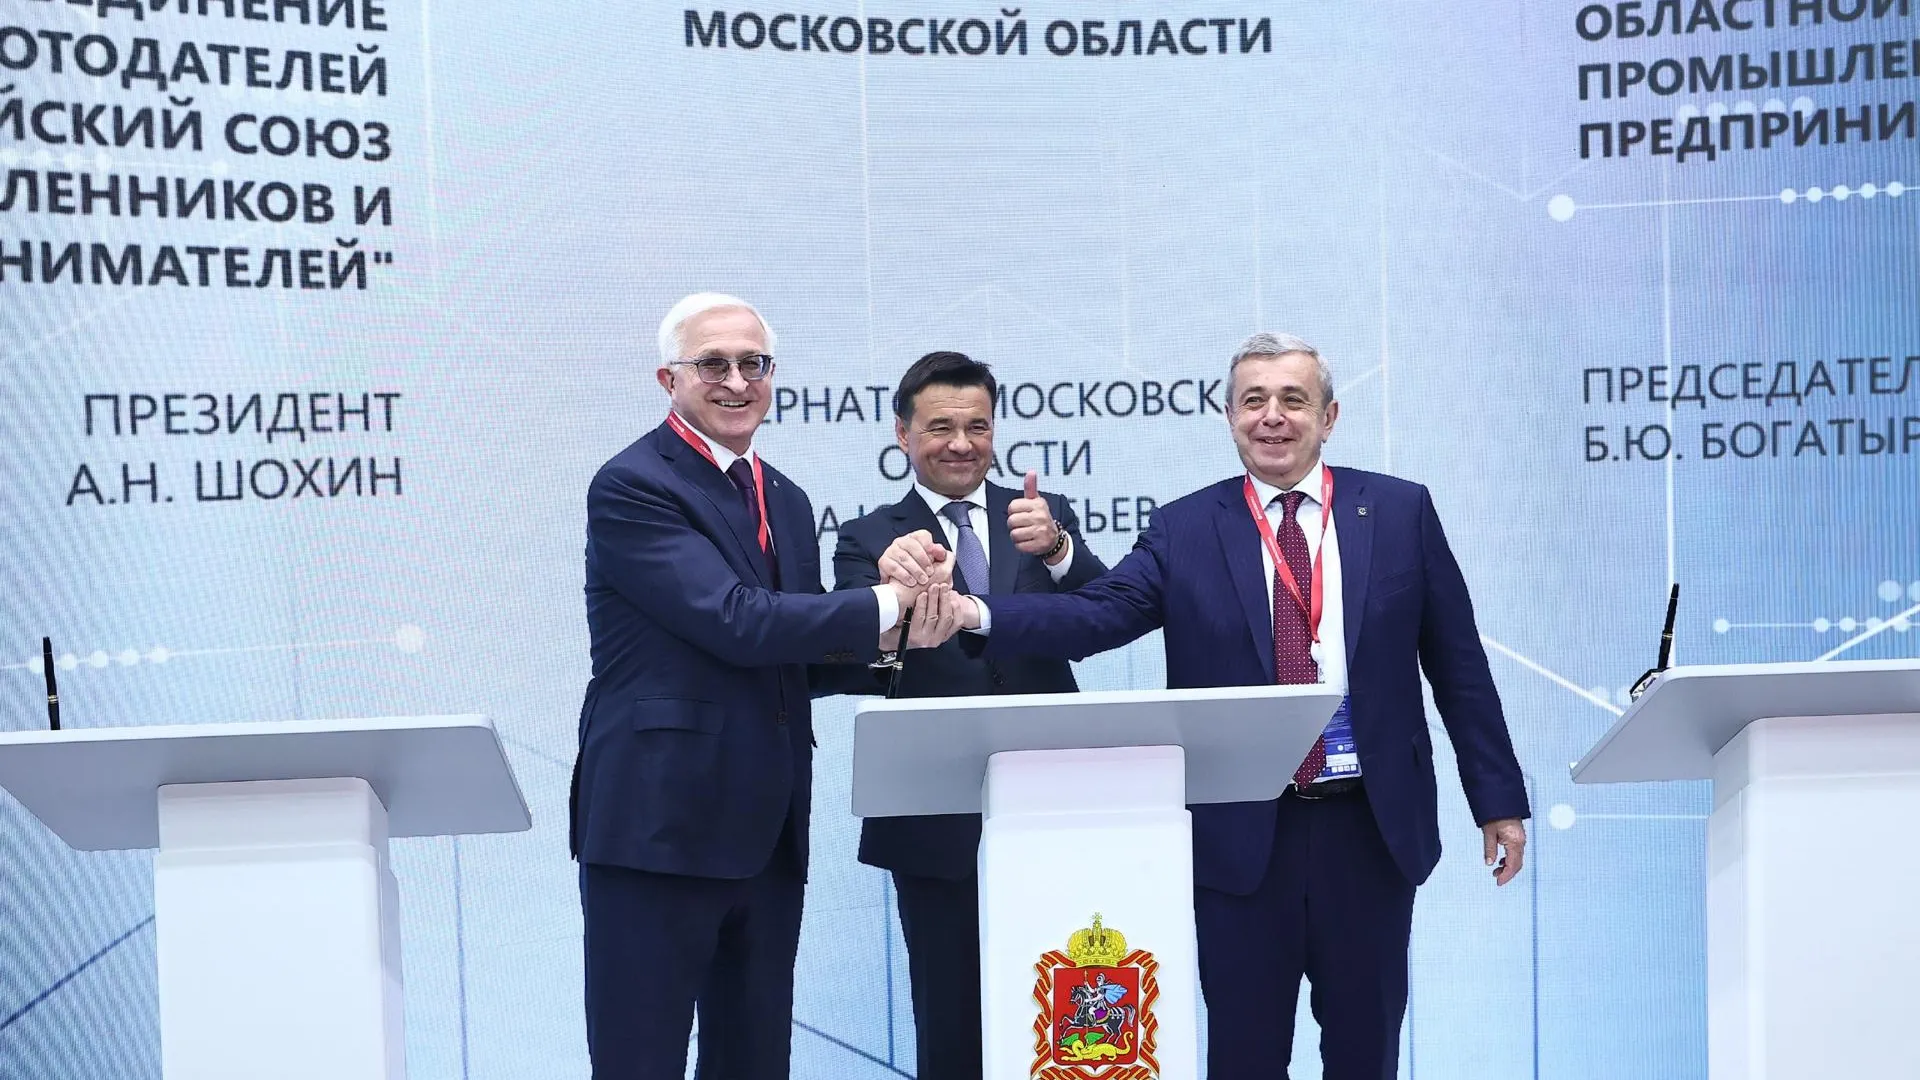 Подмосковье подписало соглашение о работе по улучшению инвестклимата — губернатор